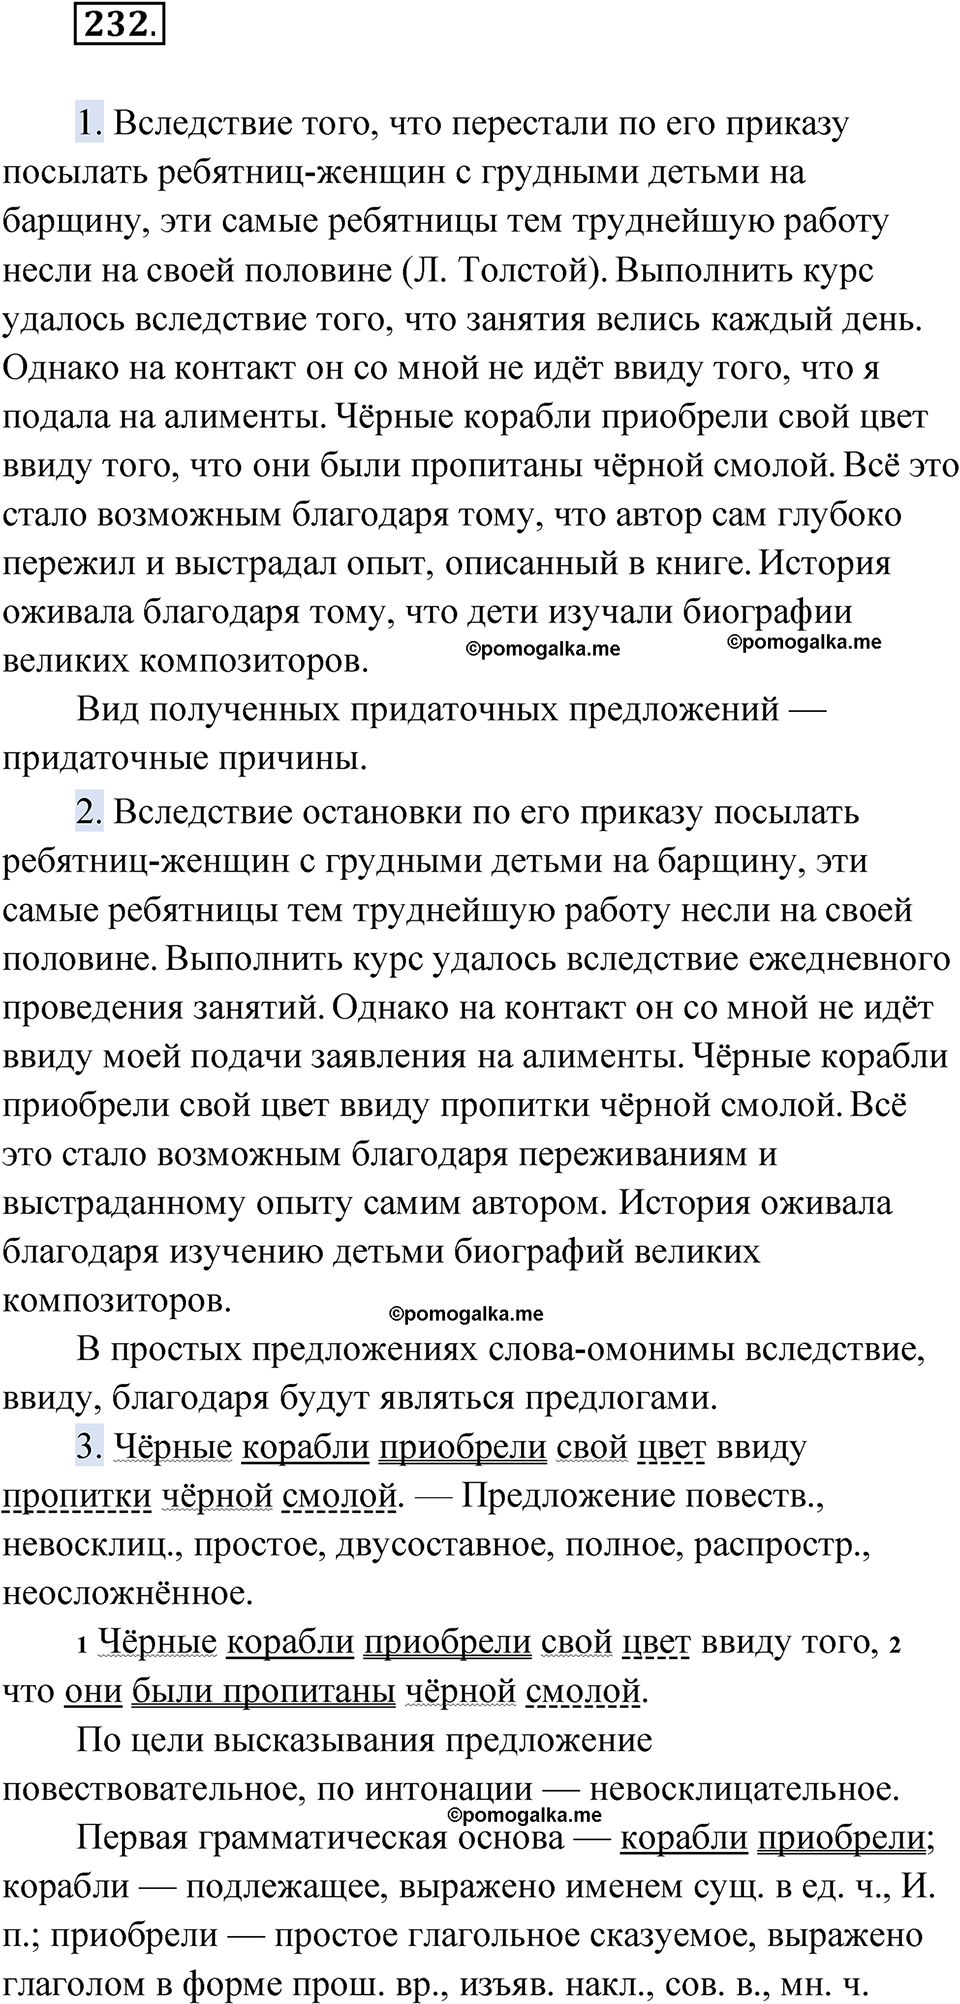 страница 255 упражнение 232 русский язык 9 класс Быстрова 1 часть 2022 год